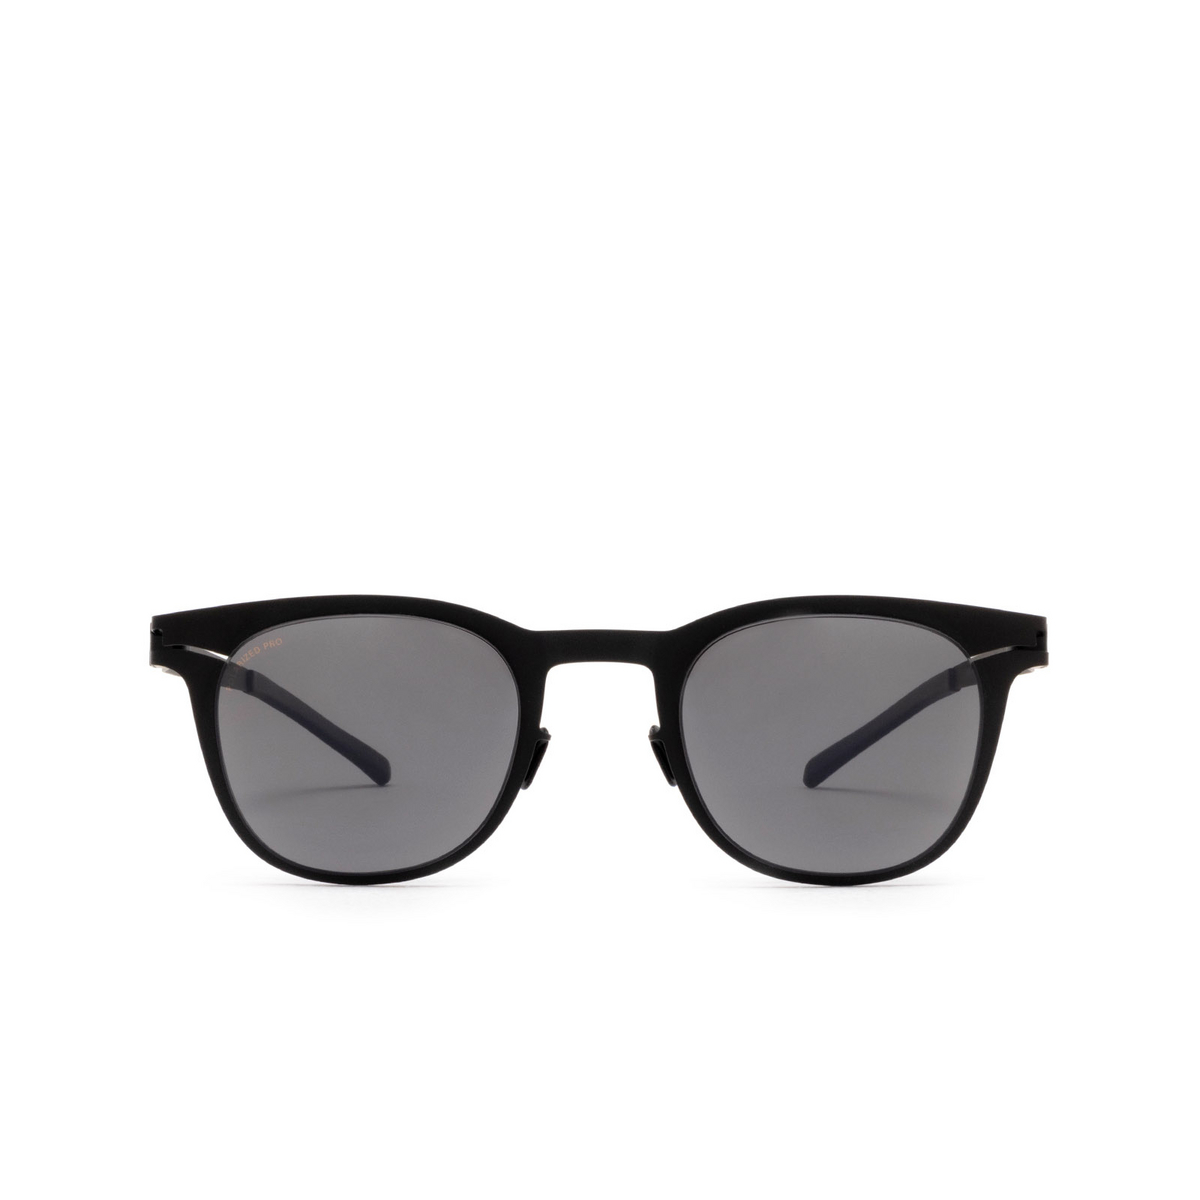 Mykita® Square Sunglasses: Callum color 002 Black - front view